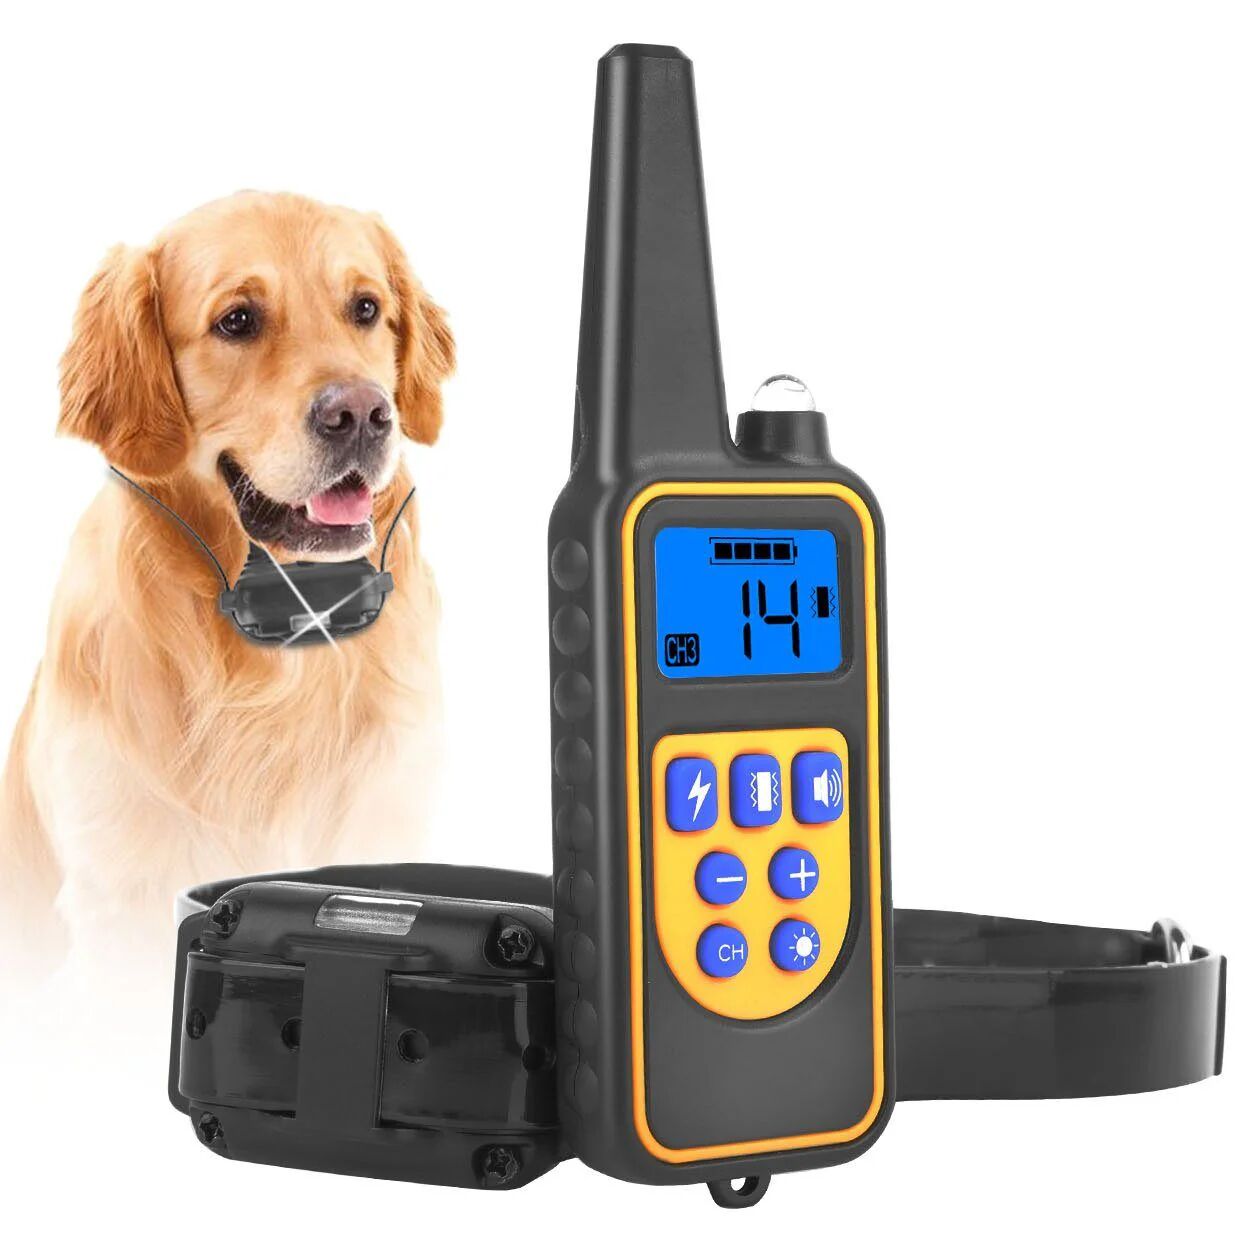 DailySale IMountek Dog Training Collar IP